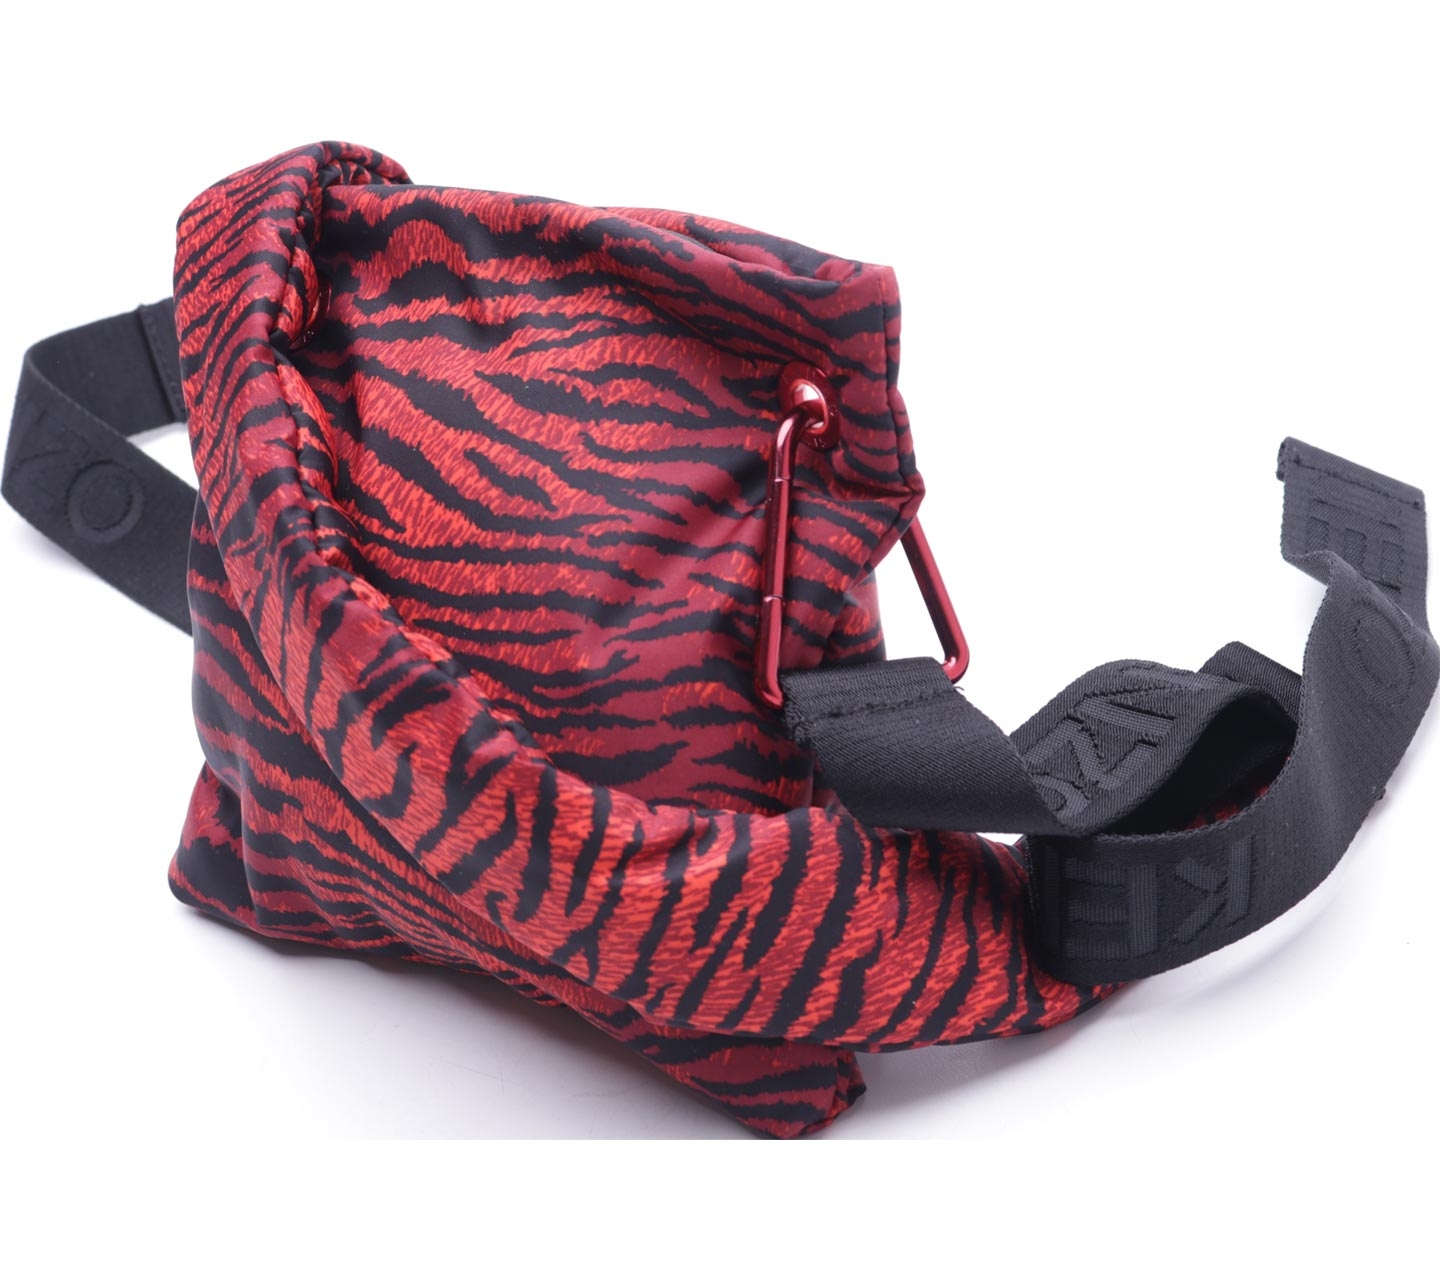 Kenzo X H&M Red & Black Tiger Skin Printed Sling Bag